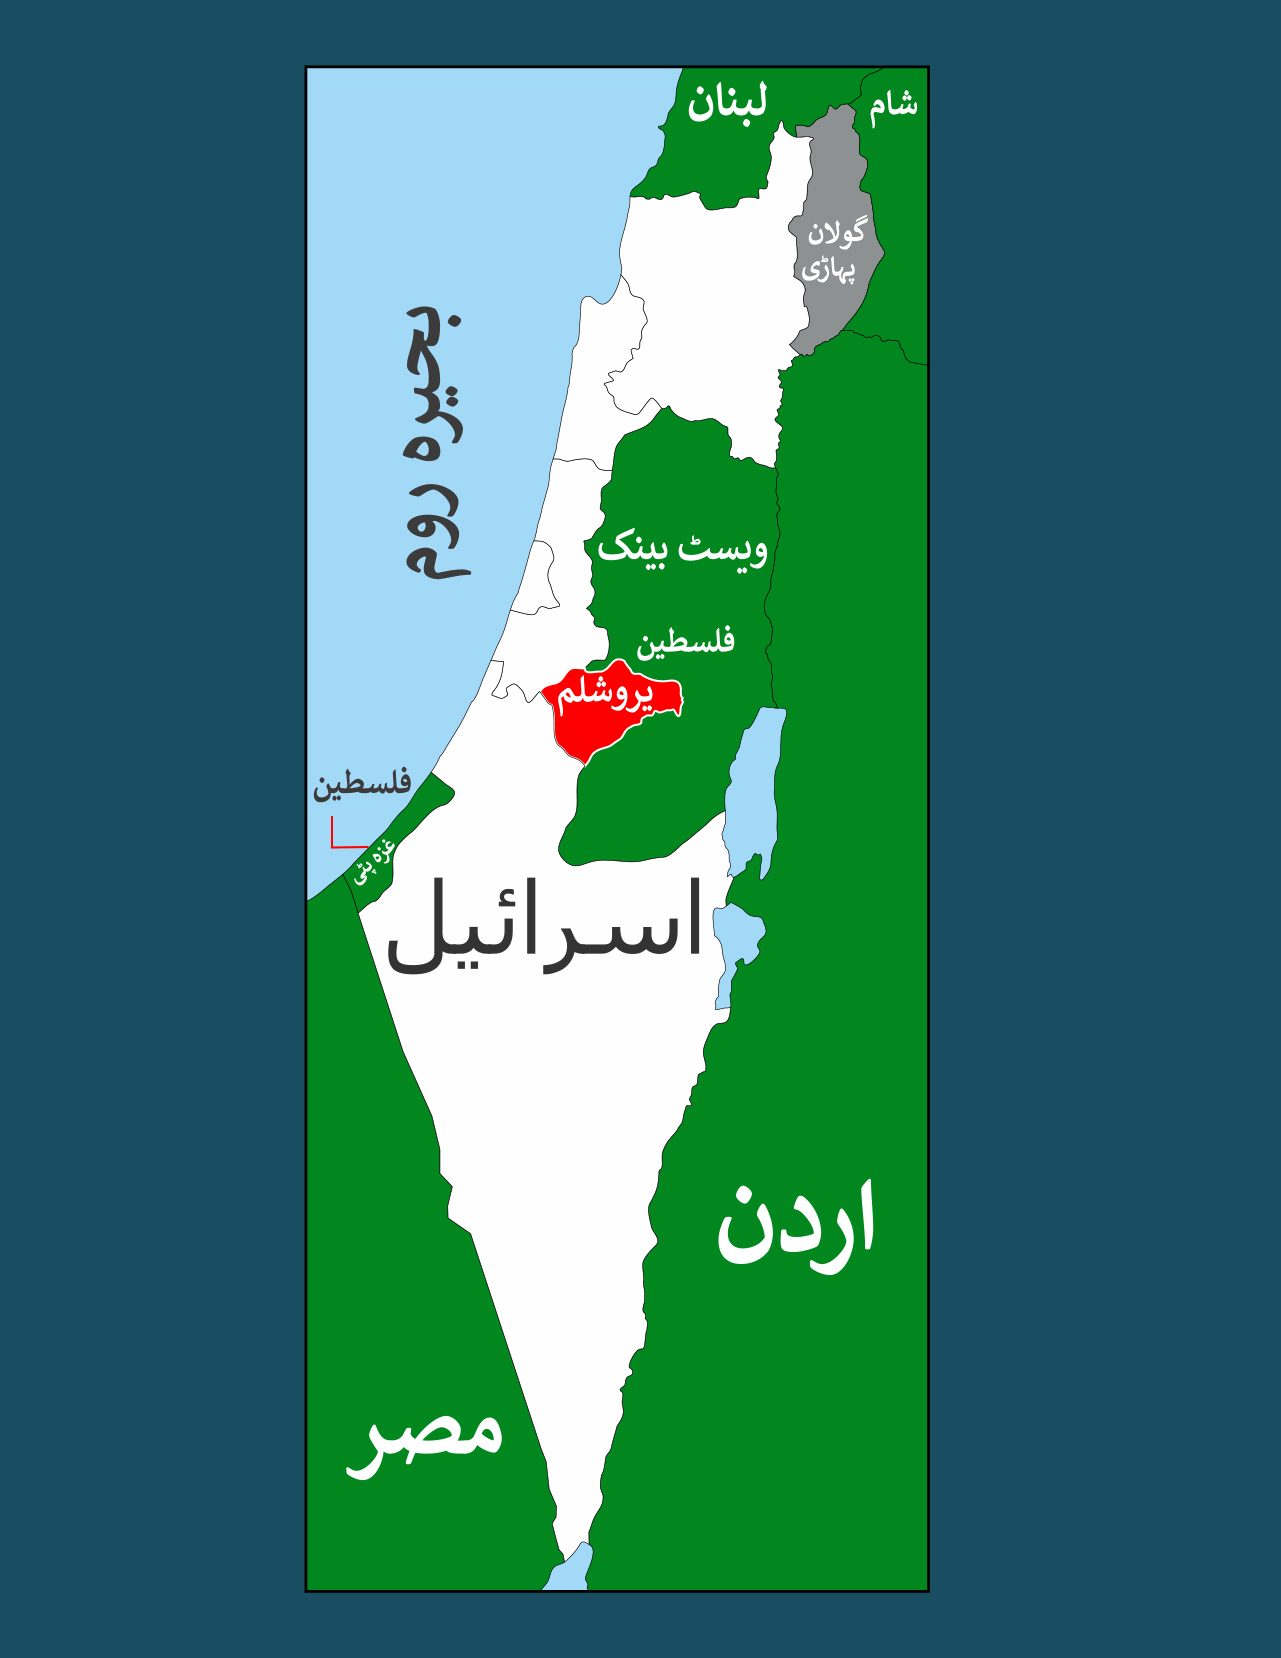 سفید نقشے میں مسلم ممالک کے درمیان گھرا اسرائیل۔